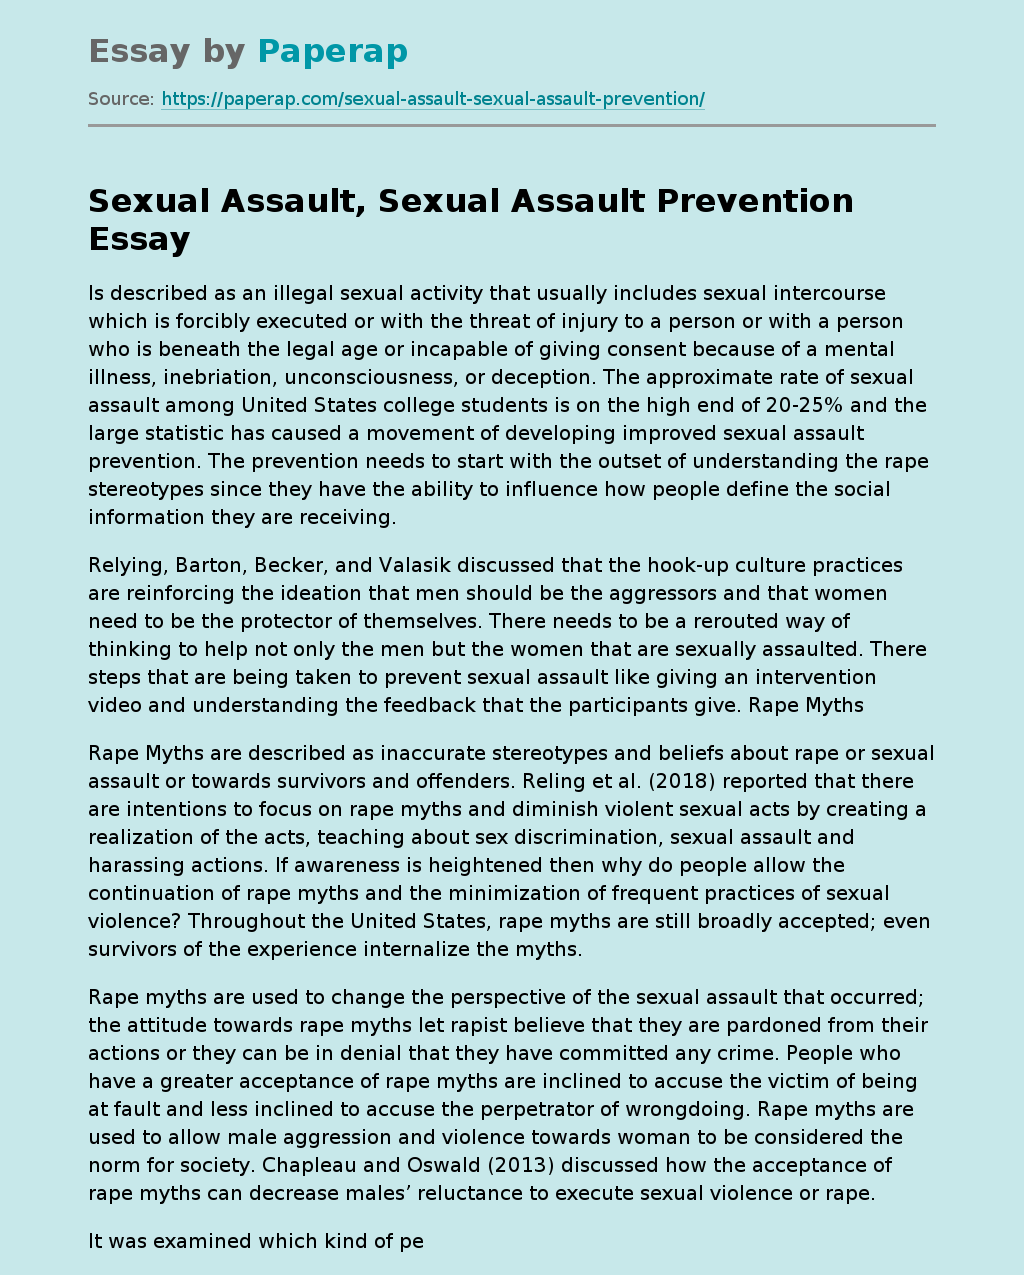 Sexual Assault, Sexual Assault Prevention